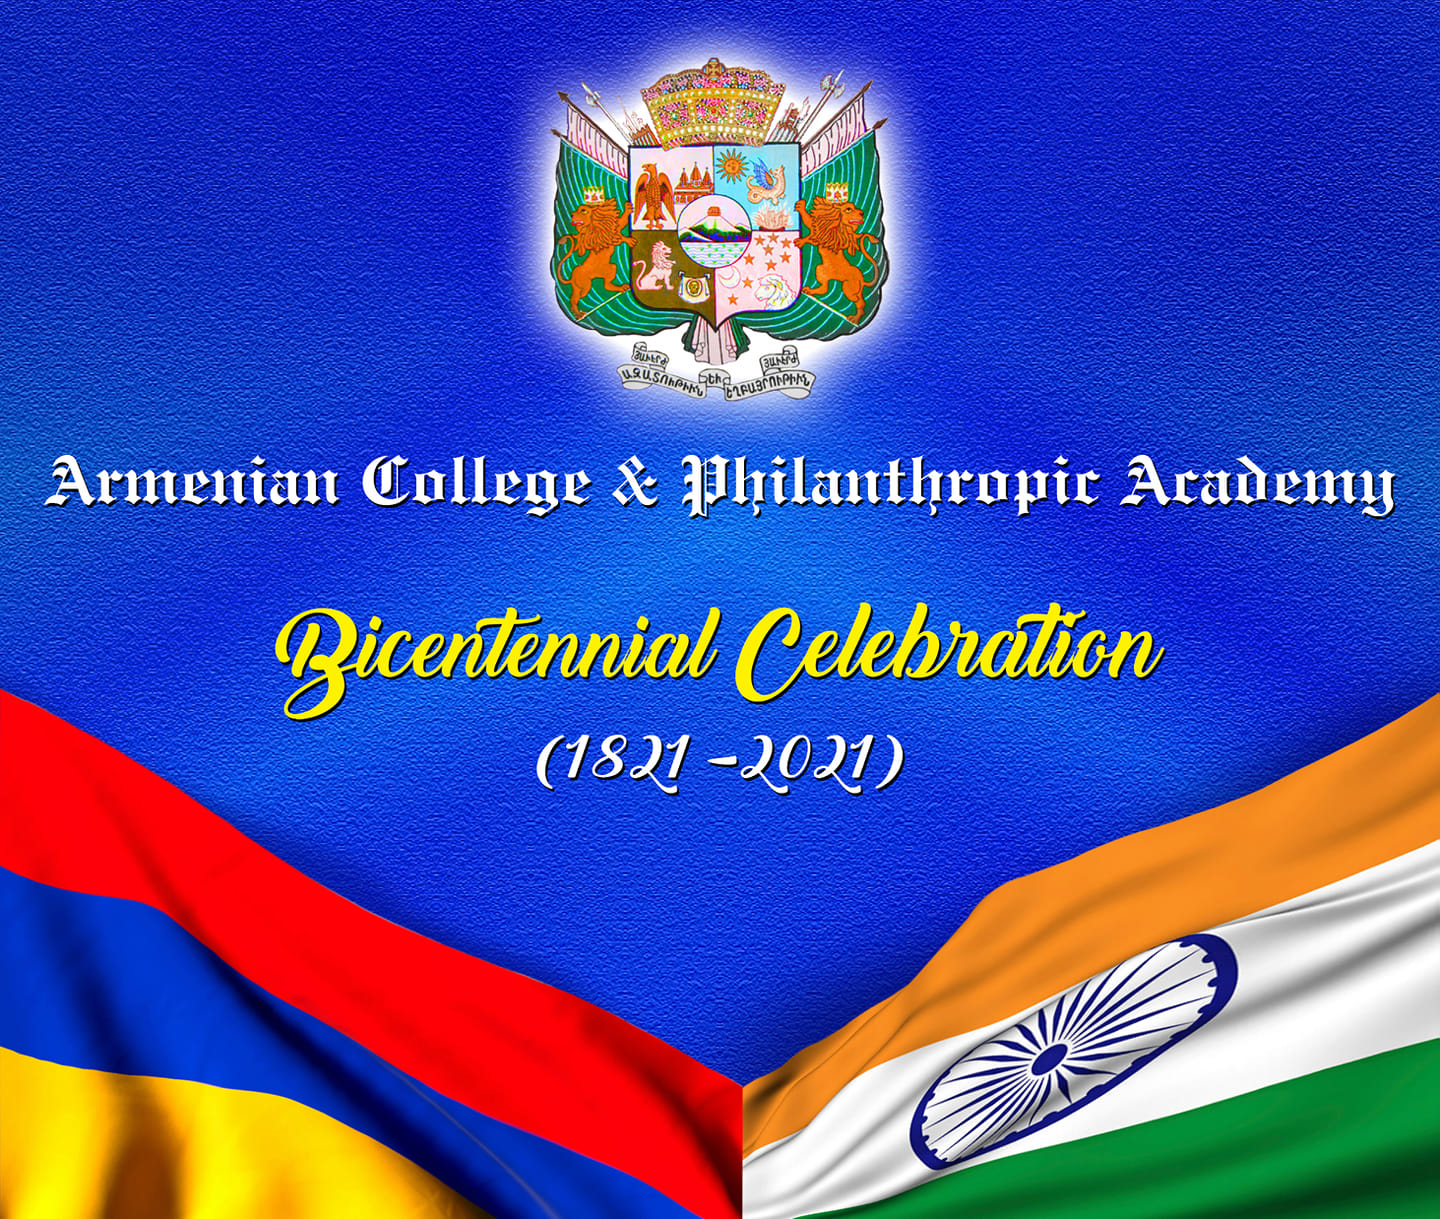 Армянский колледж и Филантропическая академия Калькутты отмечает 200-летие со дня своего основания 